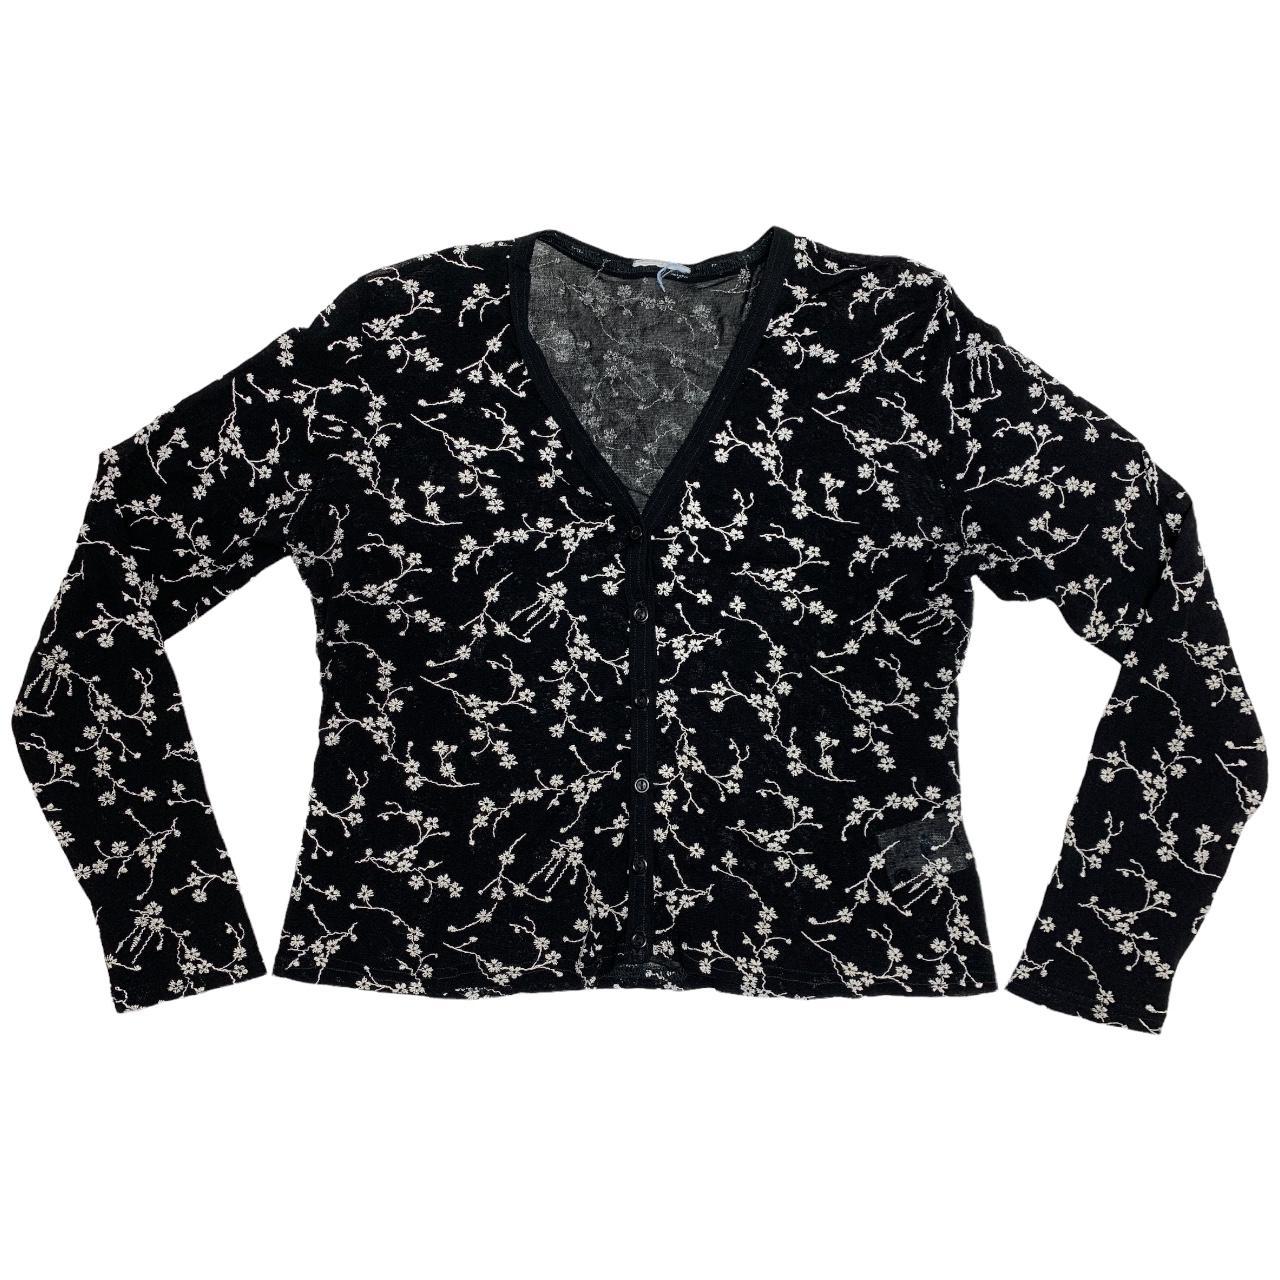 Vintage 90s sheer black mesh cardigan blouse top... - Depop